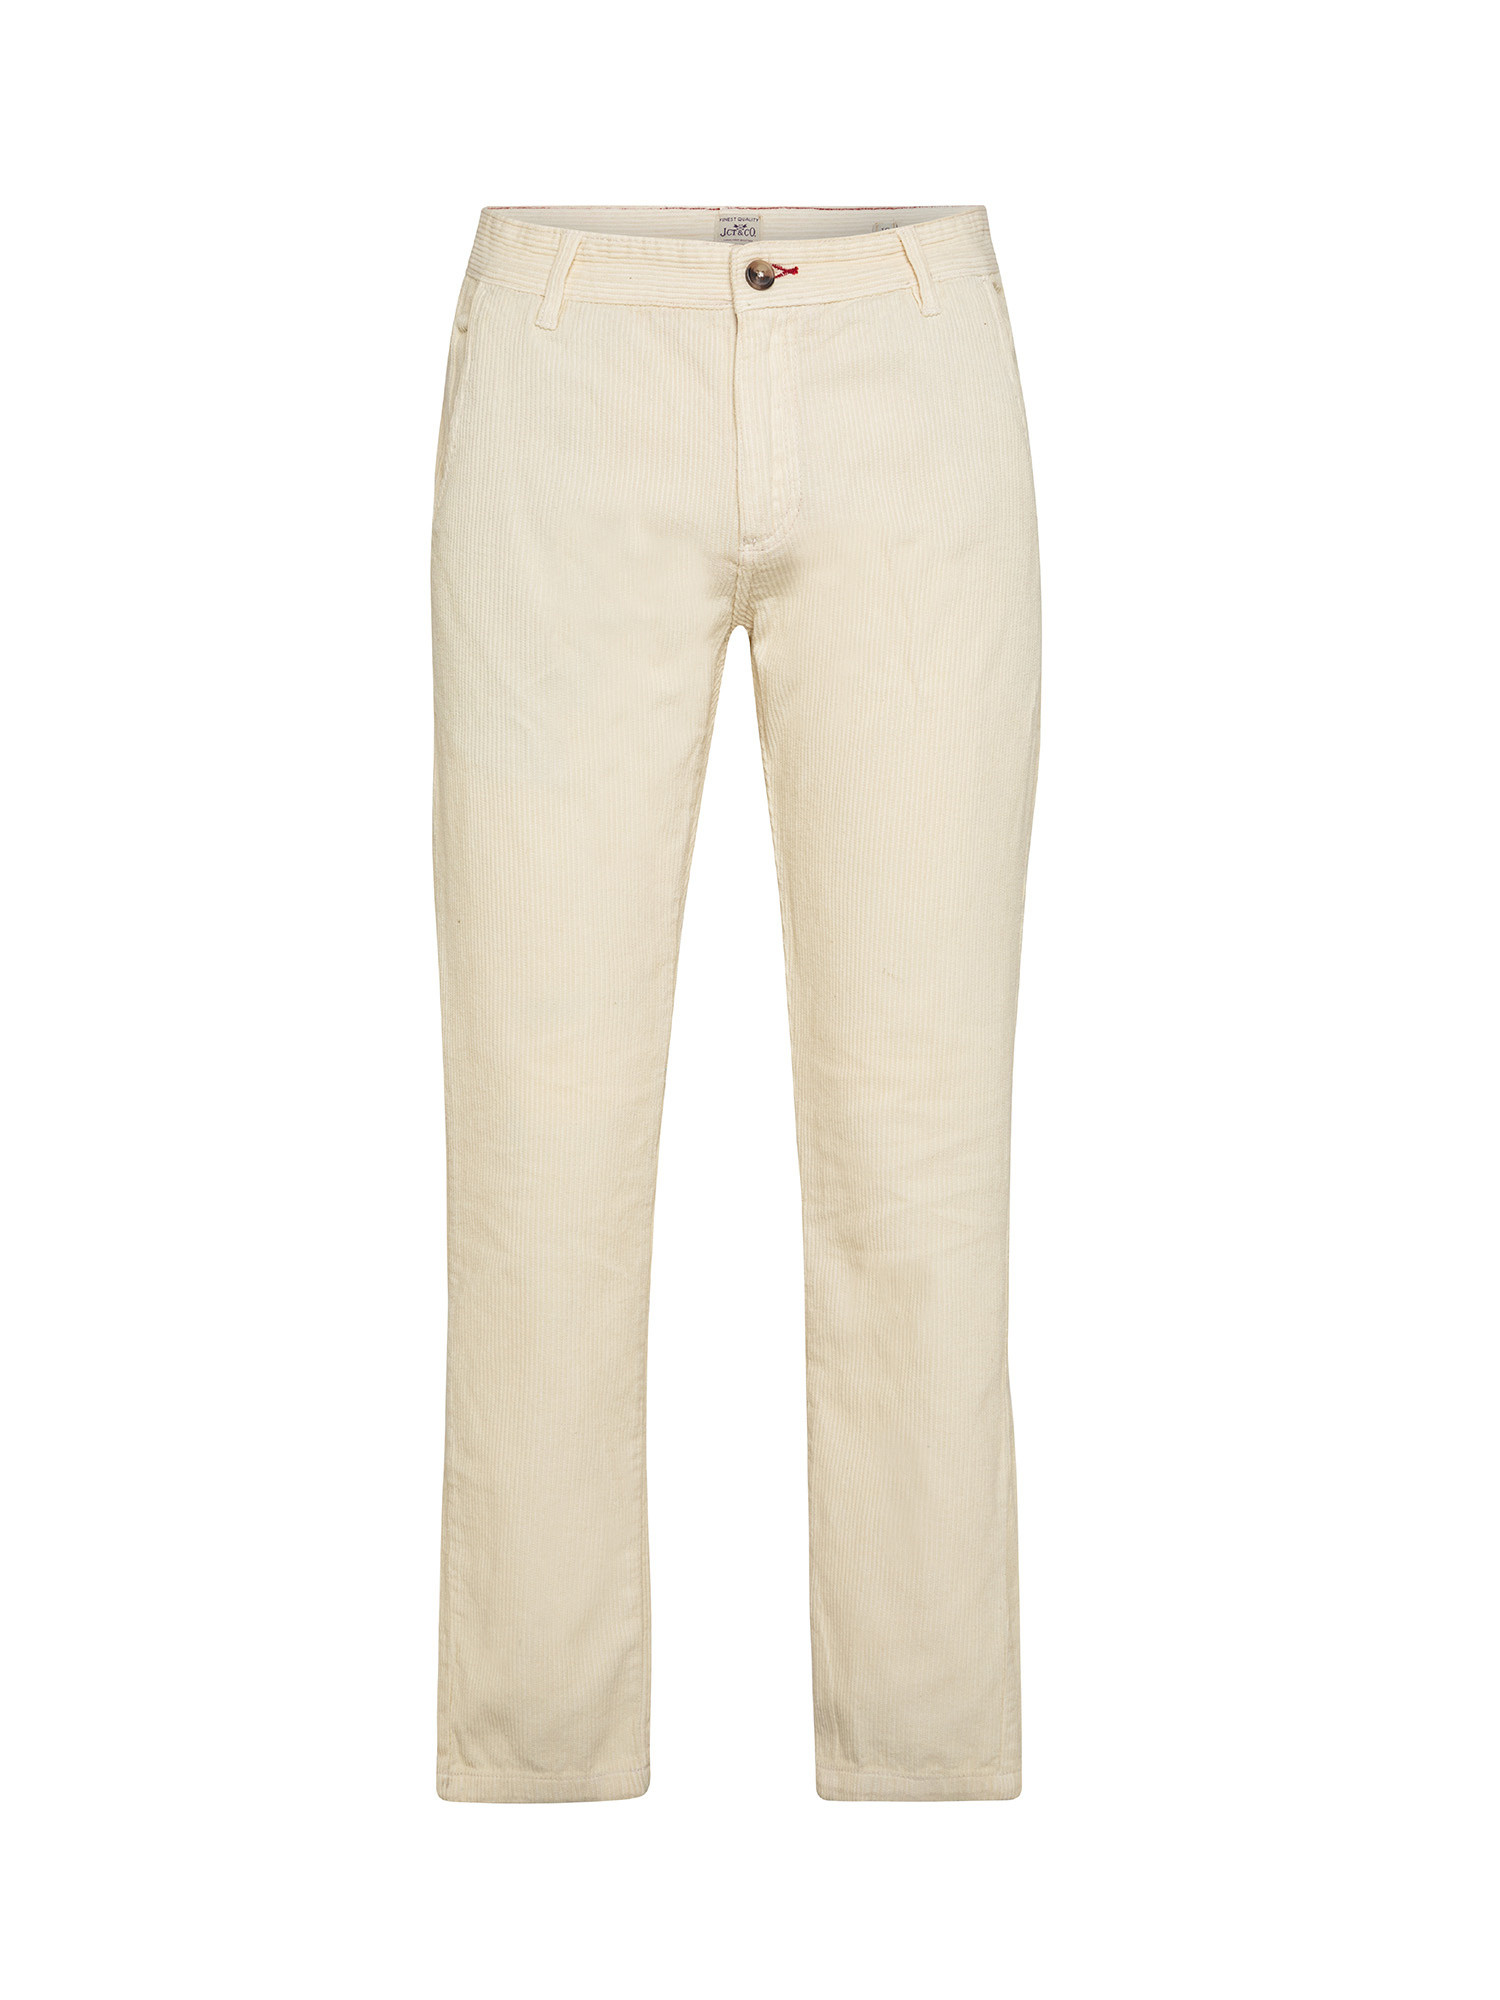 JCT - Velvet chino trousers, White Milk, large image number 0